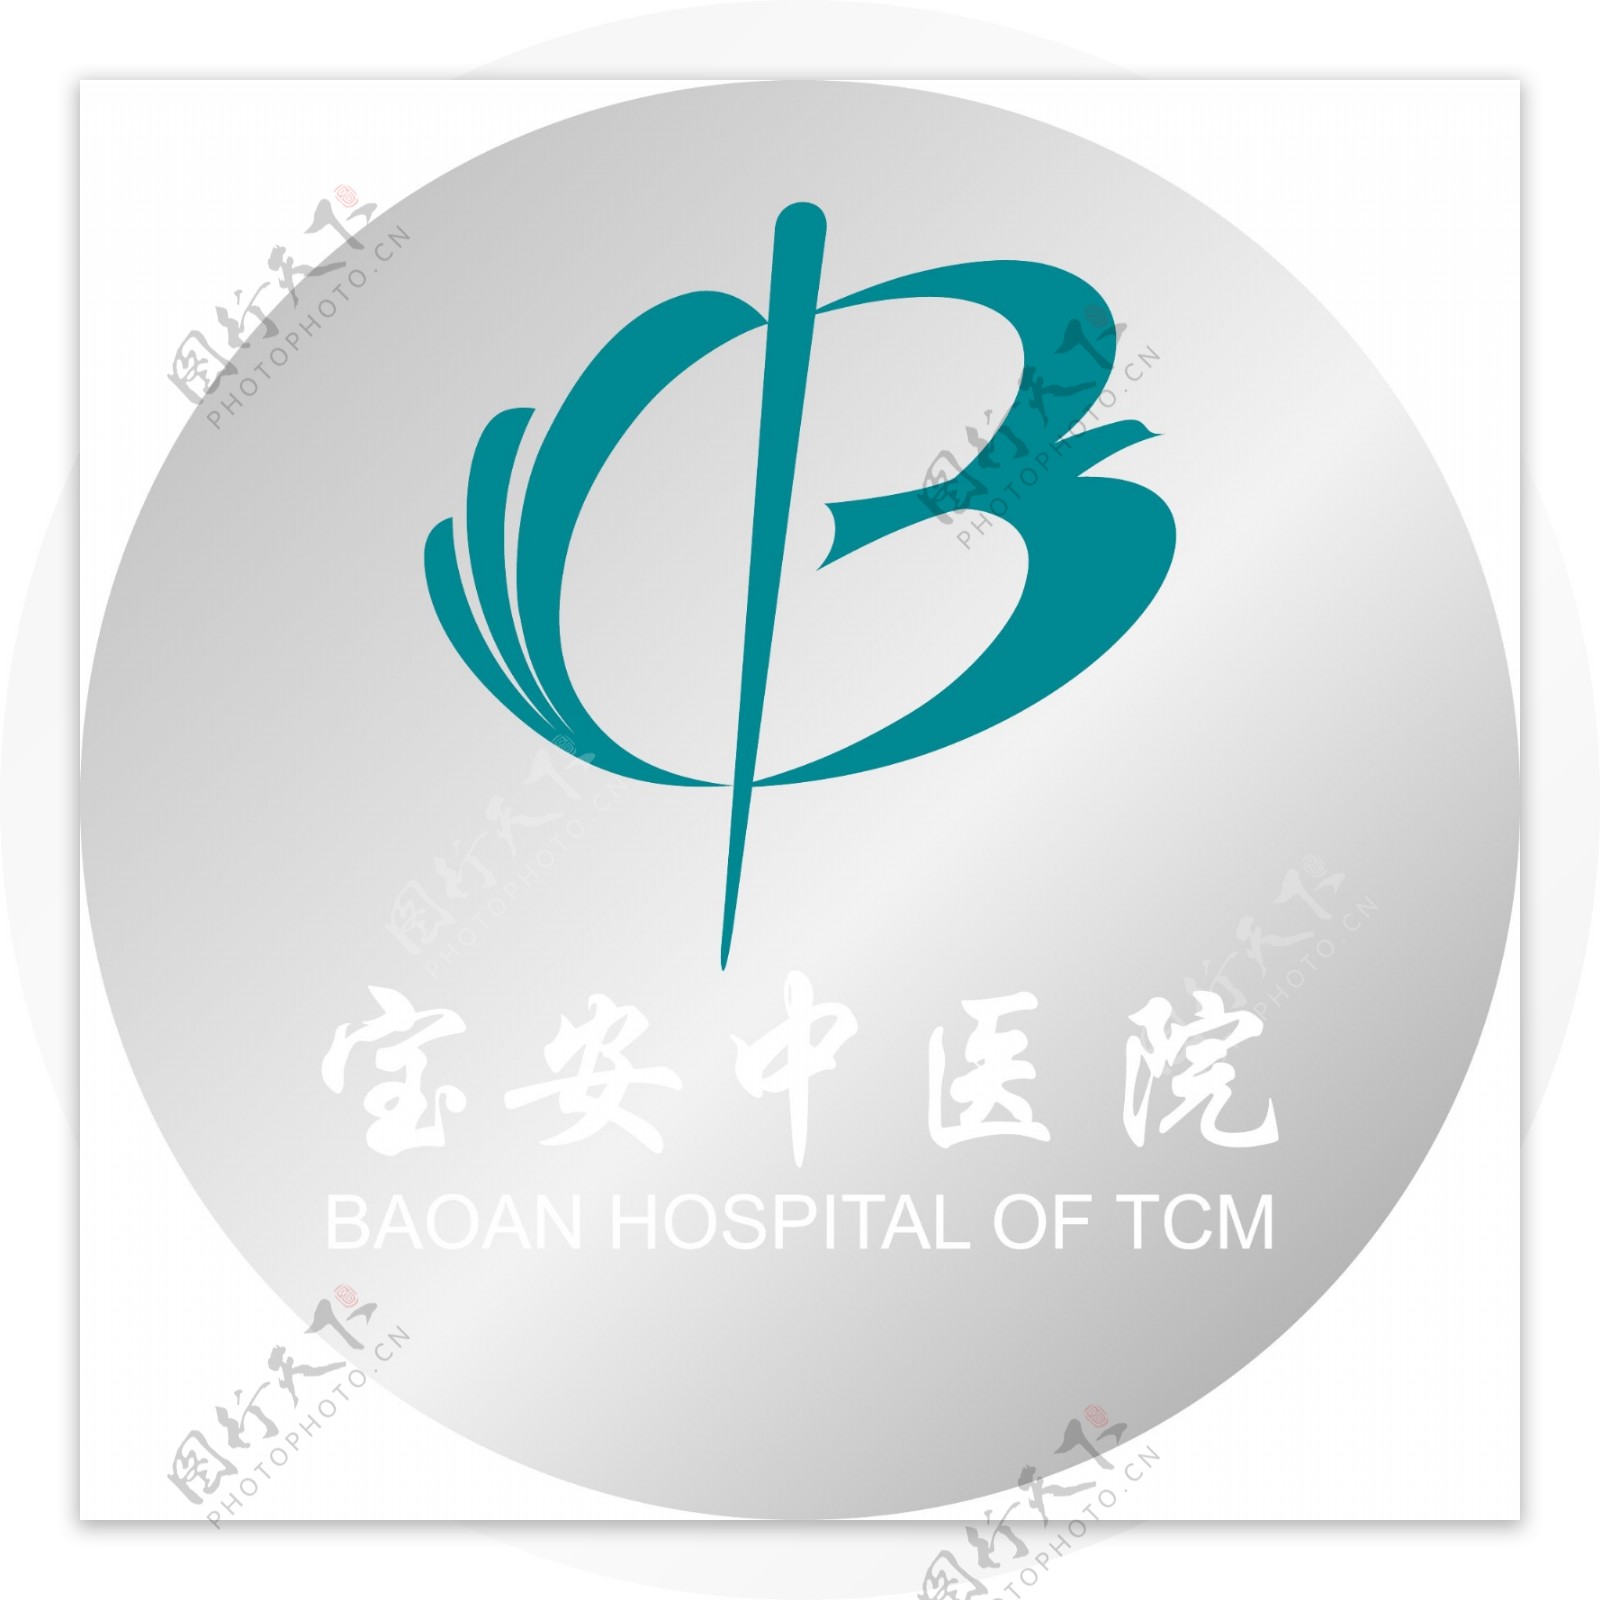 宝安中医院logo图片